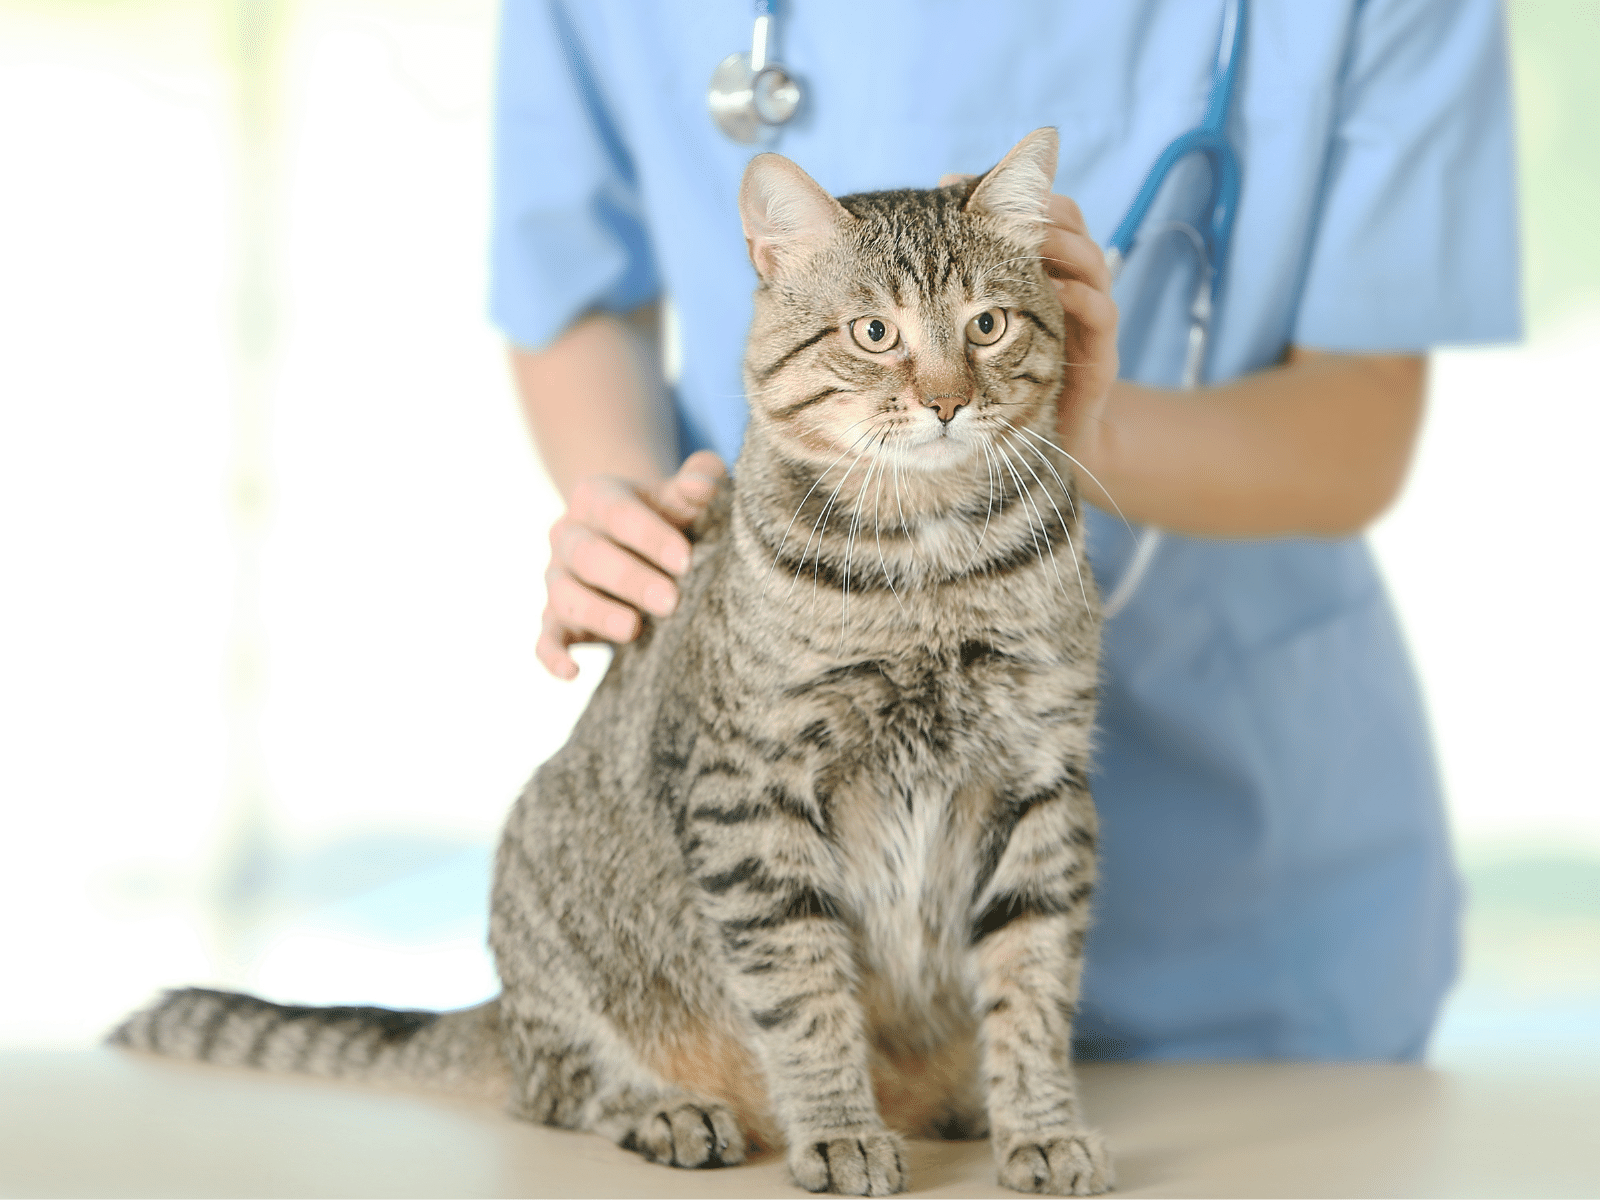 Veterinarian checking cat